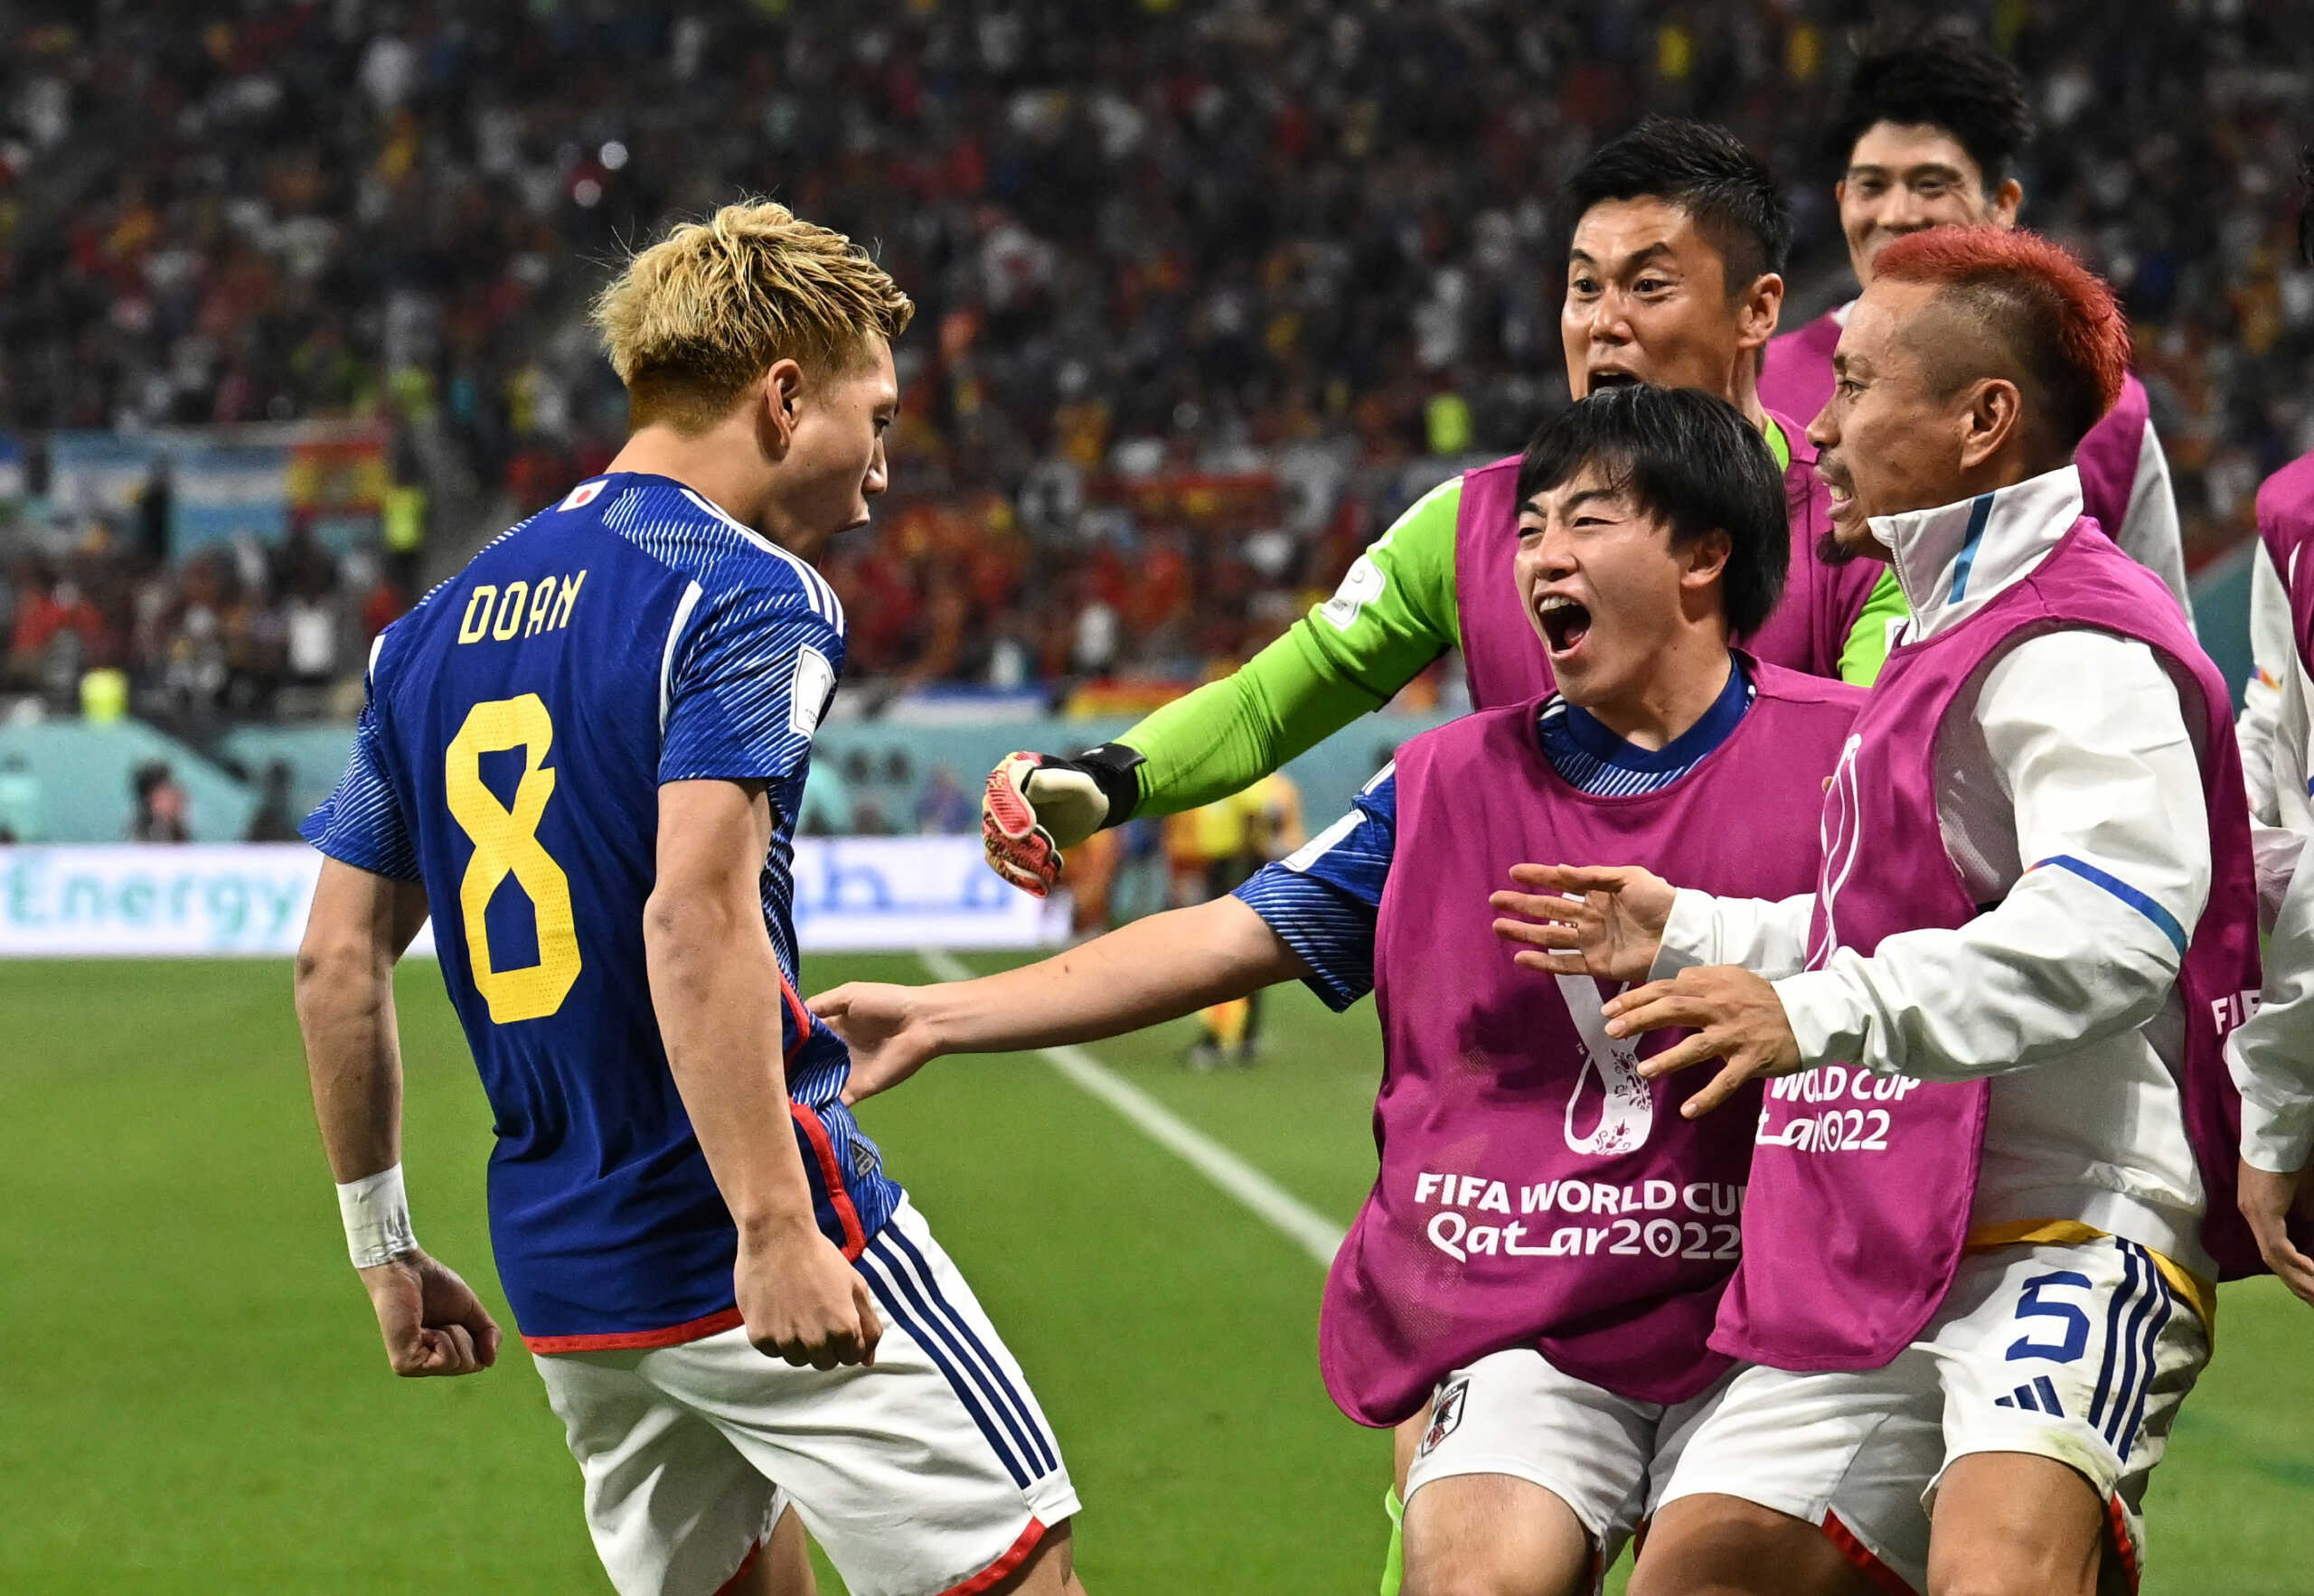 Μουντιάλ 2022: Έξαλλοι πανηγυρισμοί από τους Ιάπωνες – Σε σοκ οι Γερμανοί